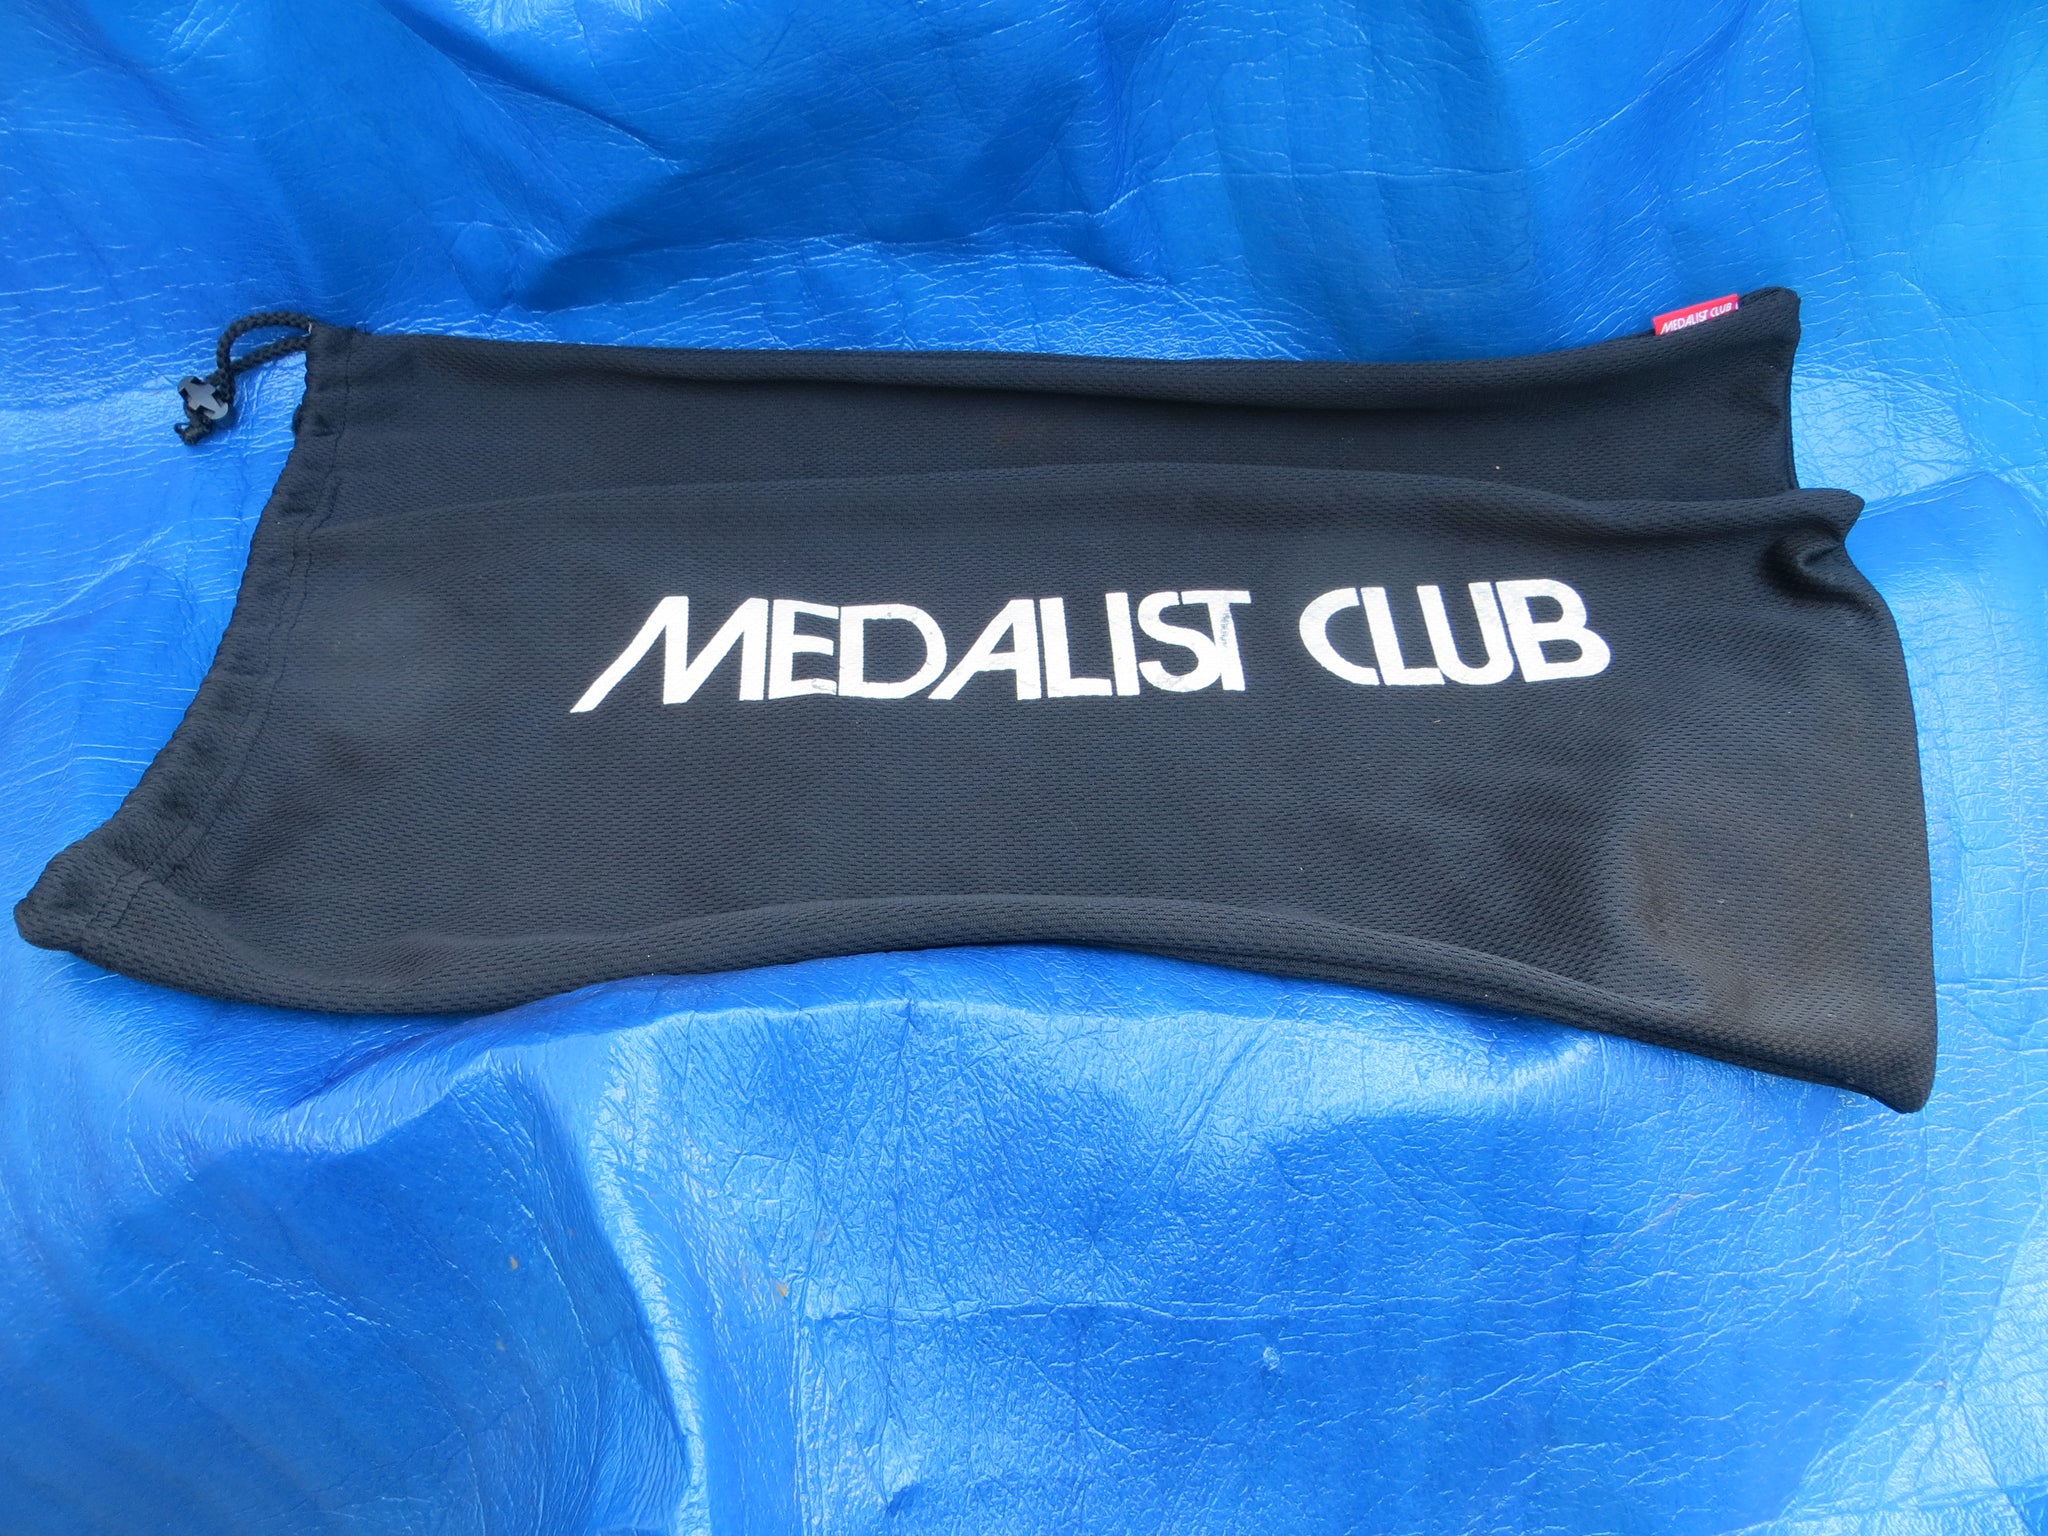 Medalist Club Cycling Gear Case Bag